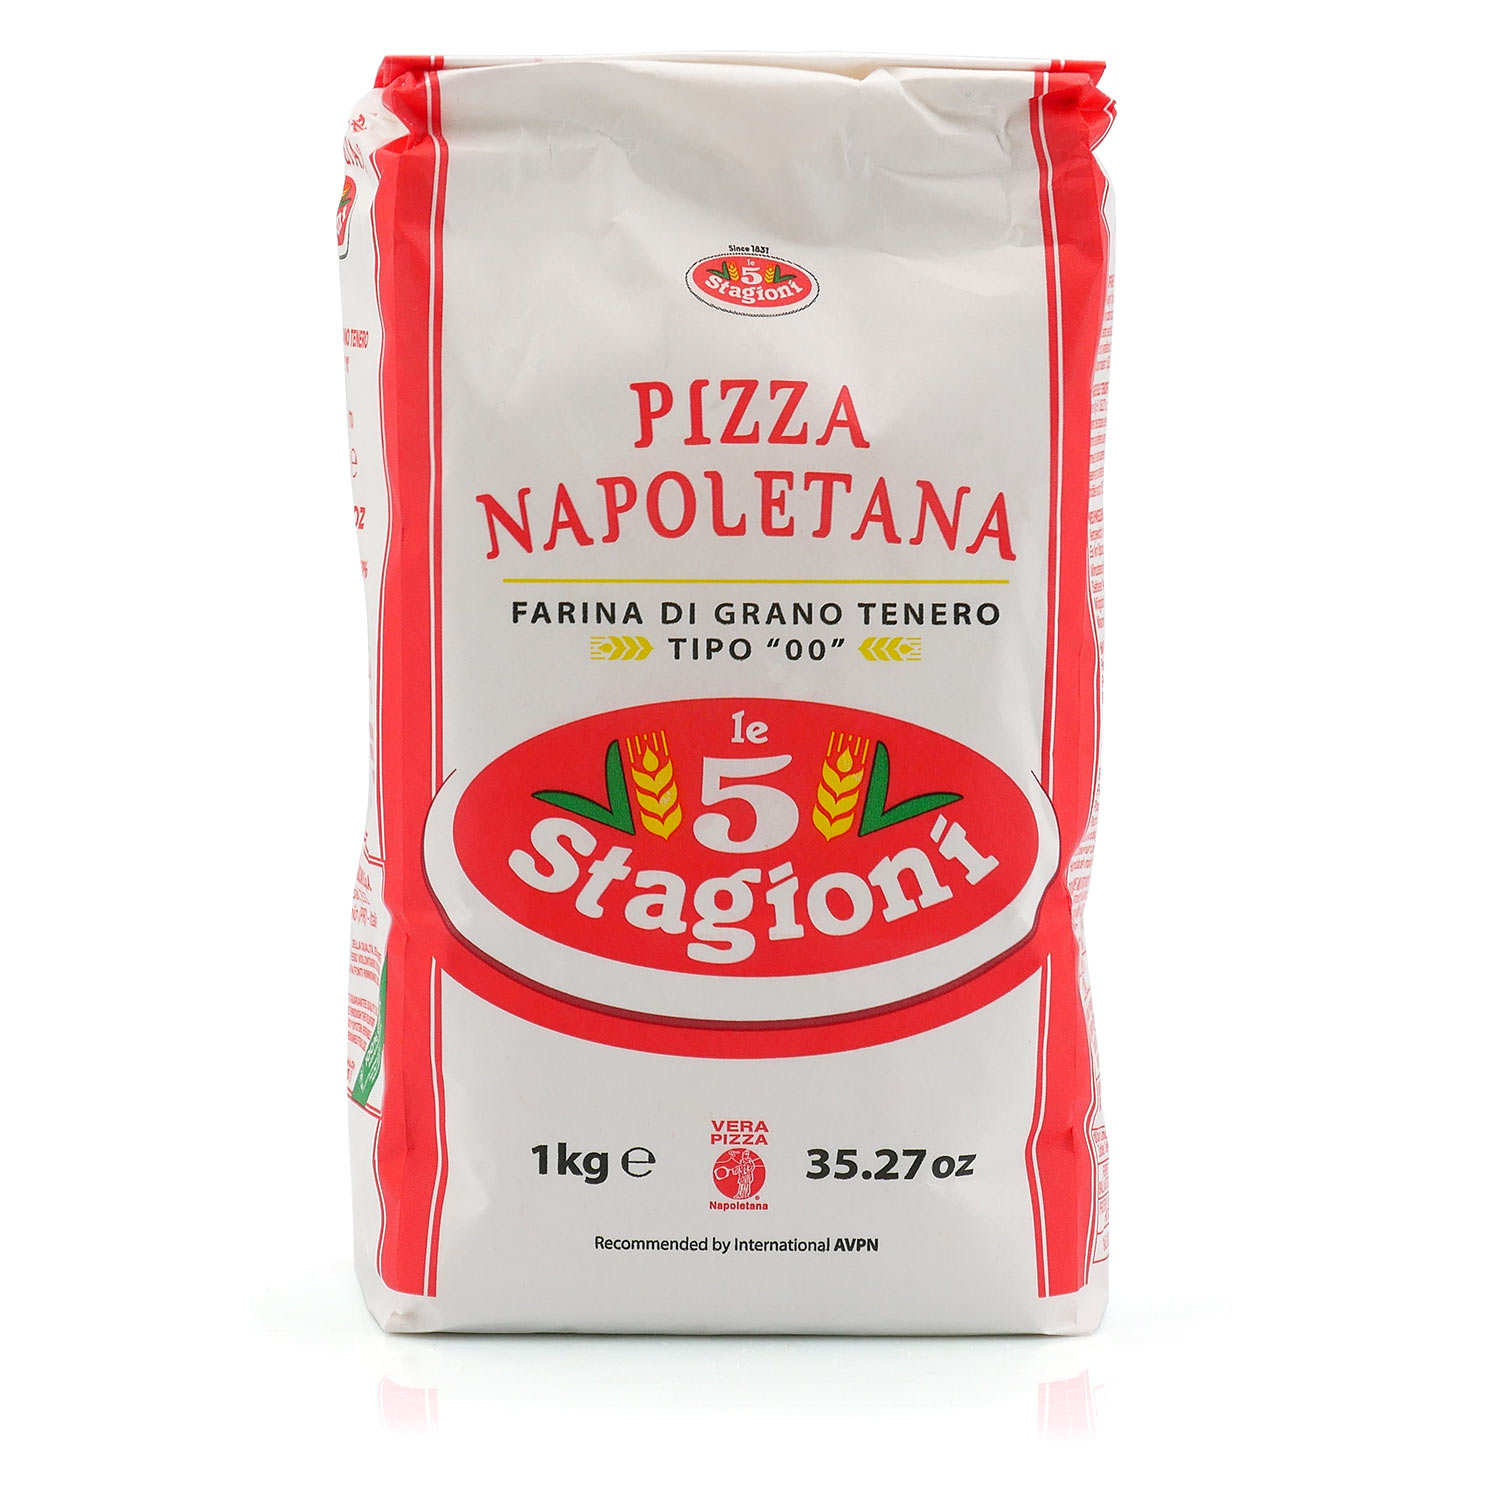 Farine Type 00 pour Pizza Teglia 5 Stagioni